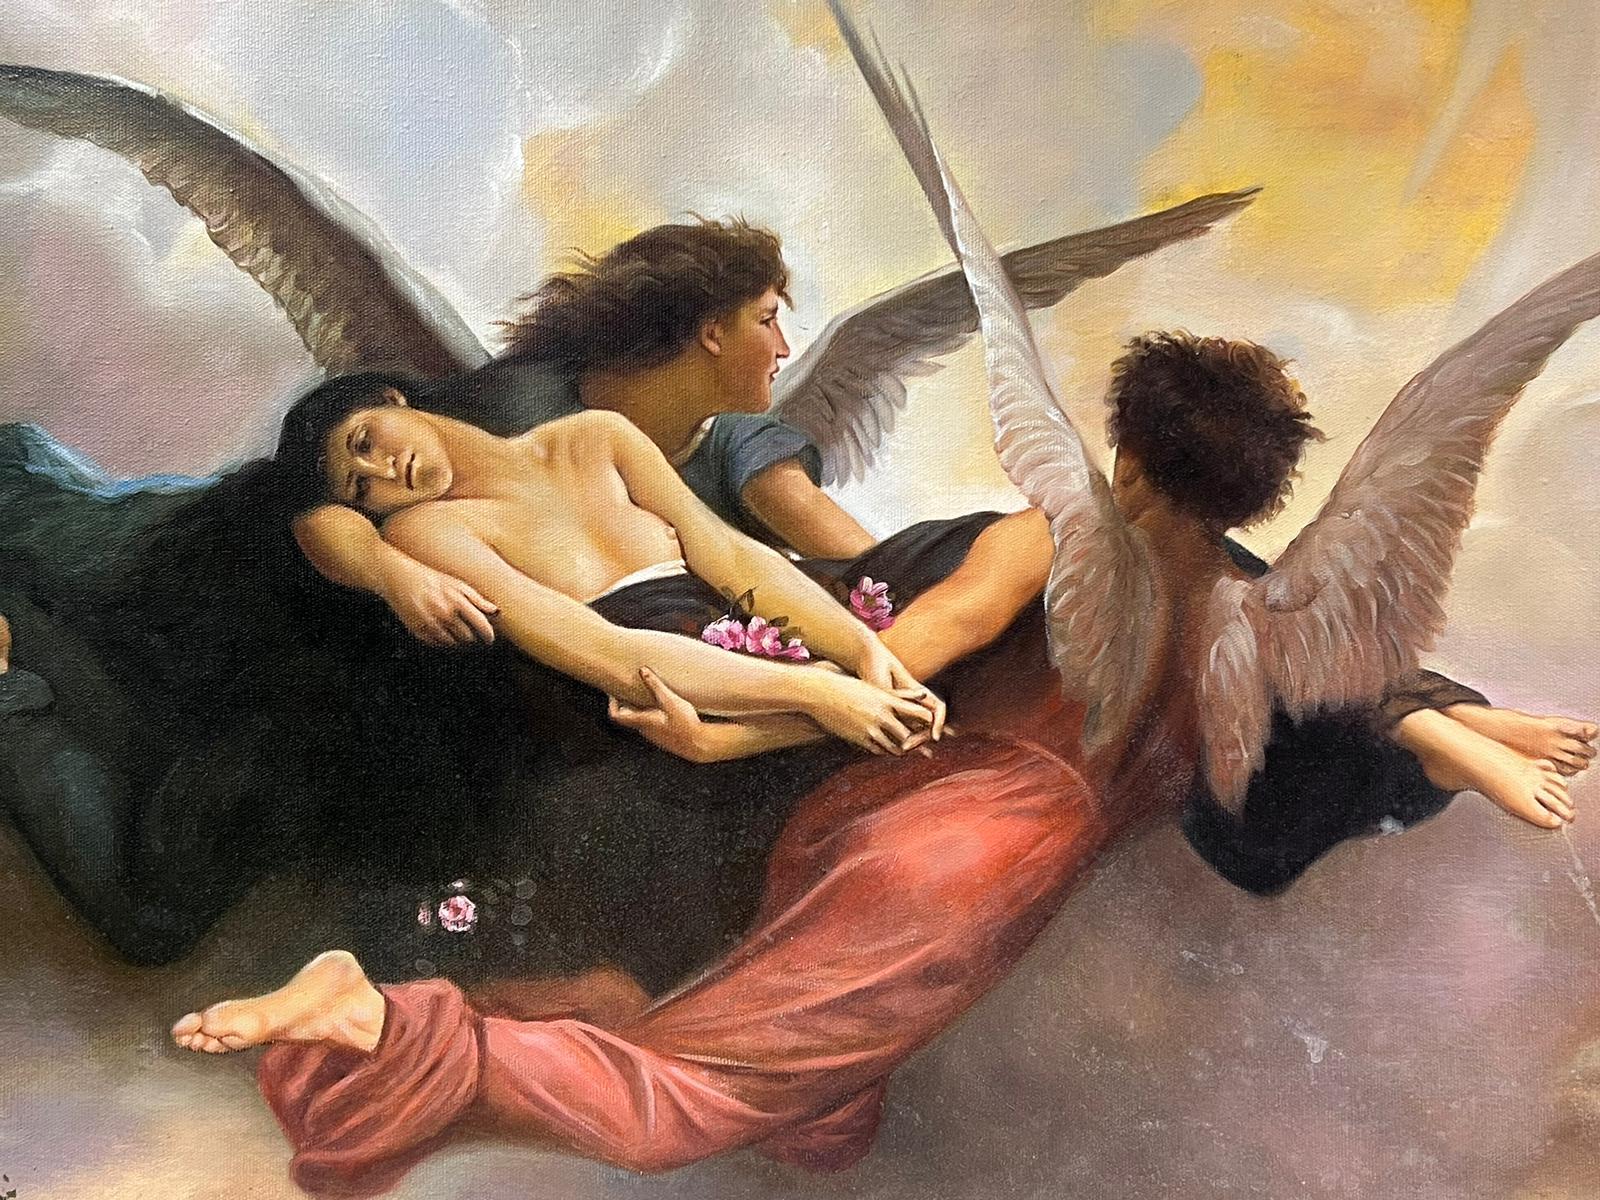 Großes mythologisches klassisches Ölgemälde geflügelter Engel mit nackter Figur im Himmel – Painting von Classical